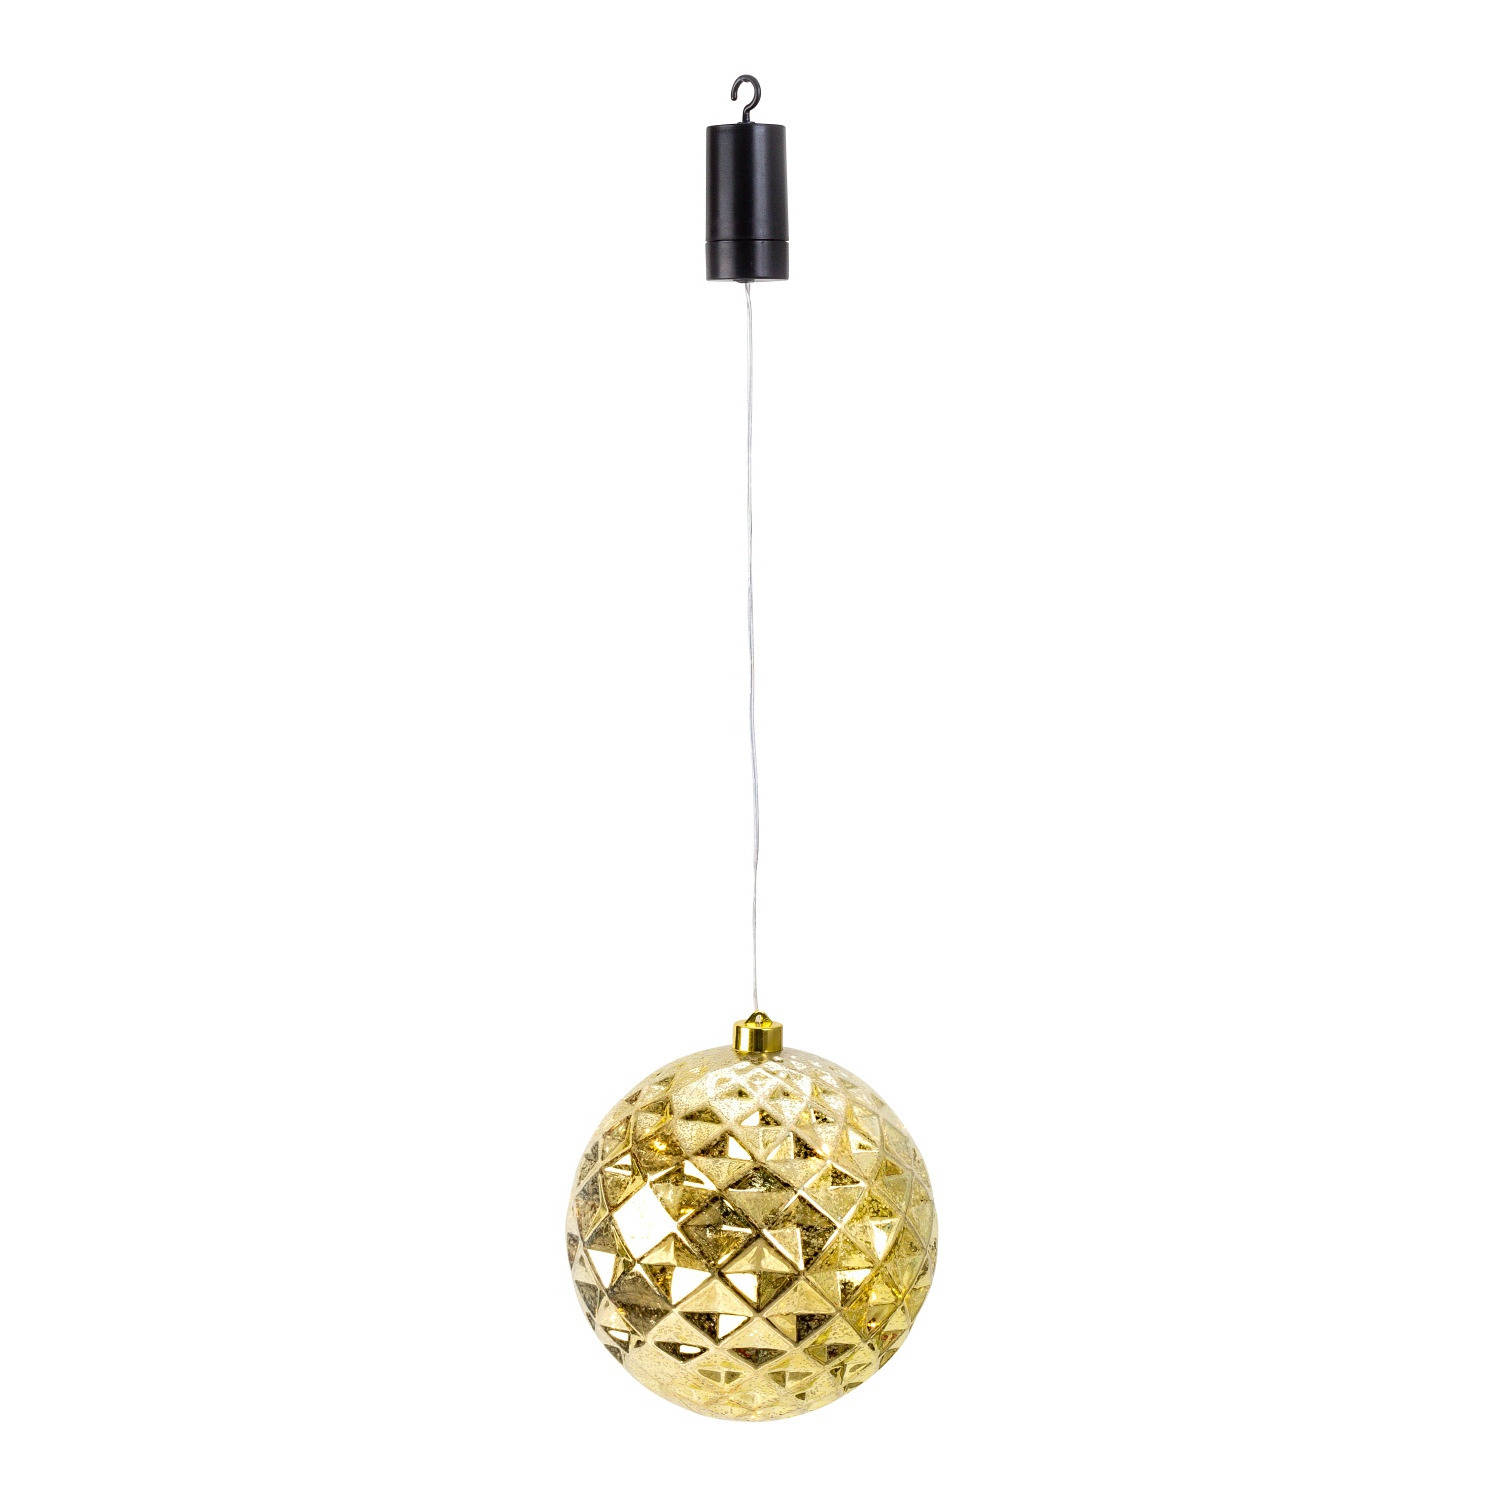 IKO kerstbal goud met led verlichting- D20 cm aan draad kerstverlichting figuur